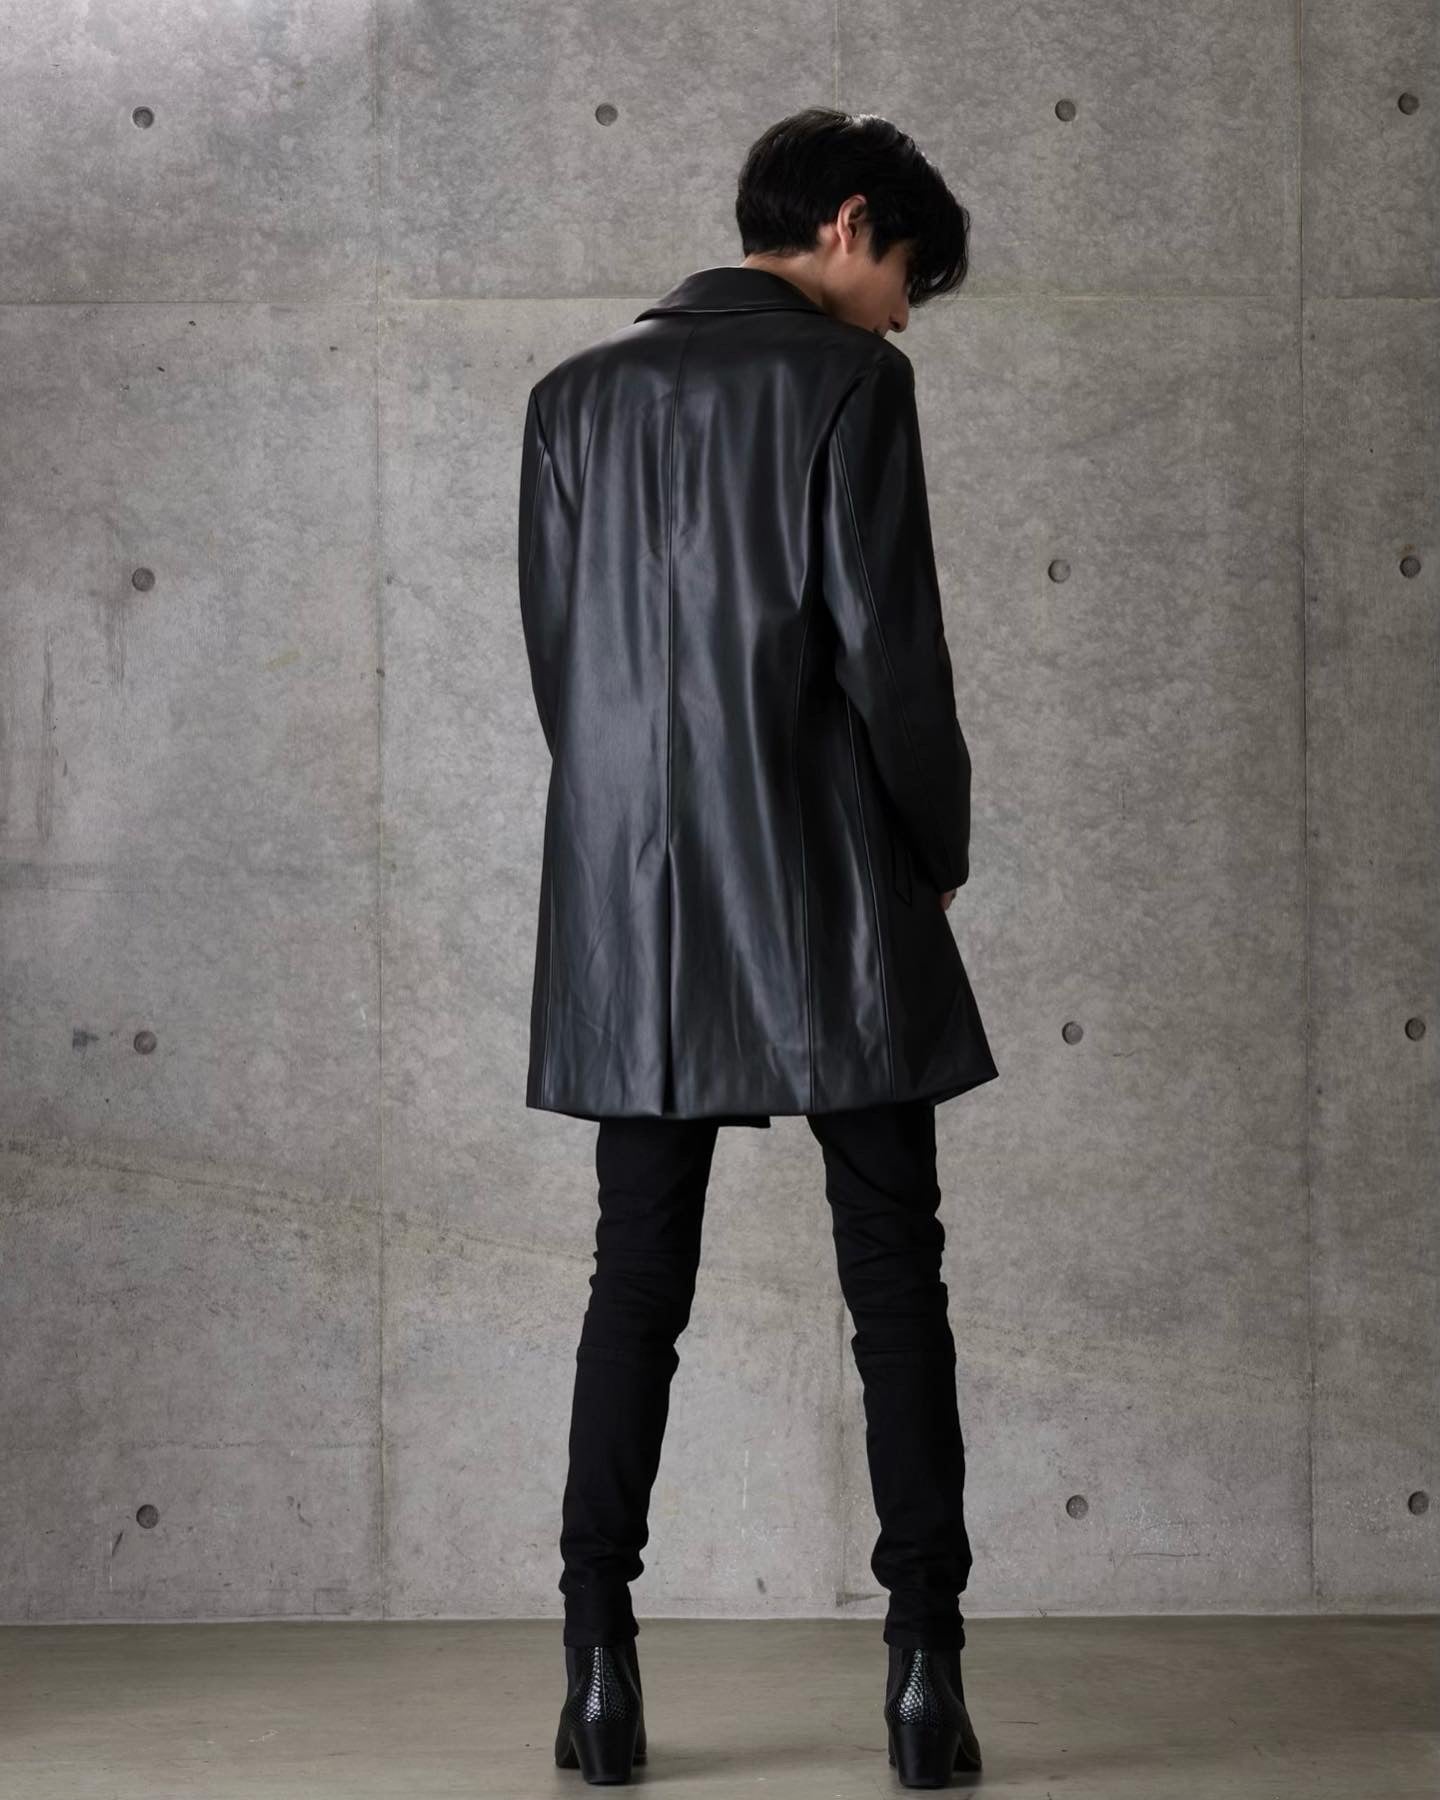 Leather Over Coat” – PANERO